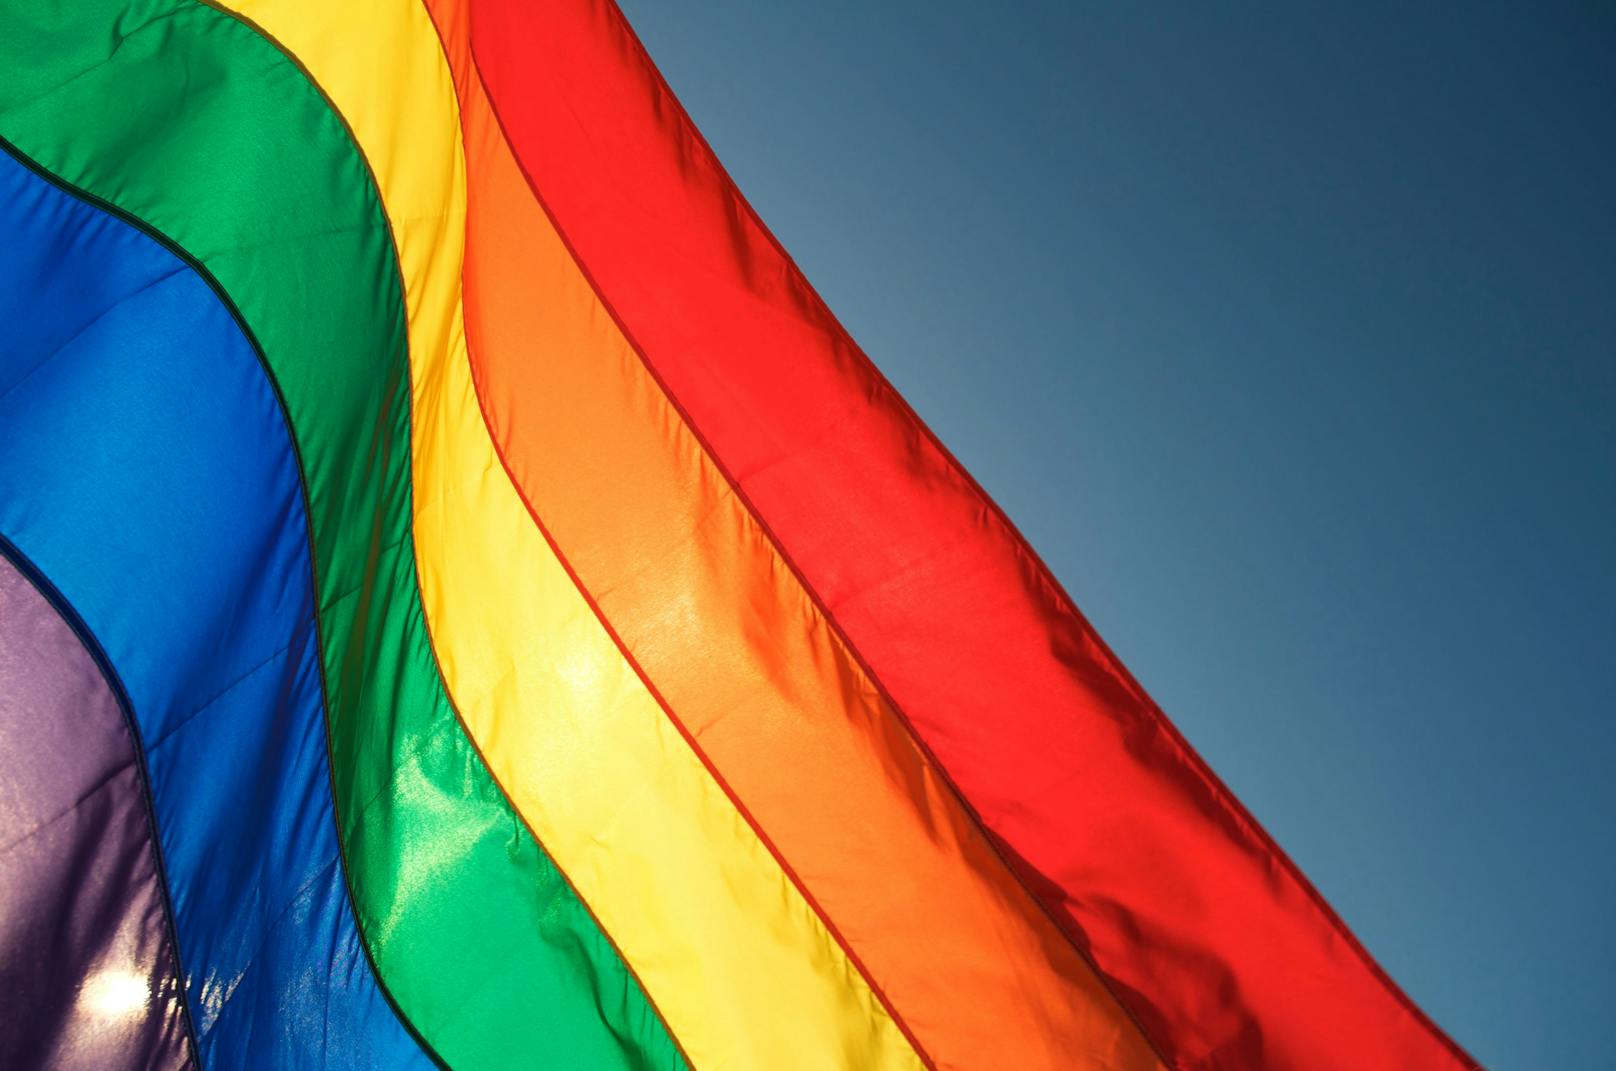 In Deutschland haben sich mehrere Personen aus dem Umfeld der katholischen Kirche öffentlich als homosexuell geoutet.